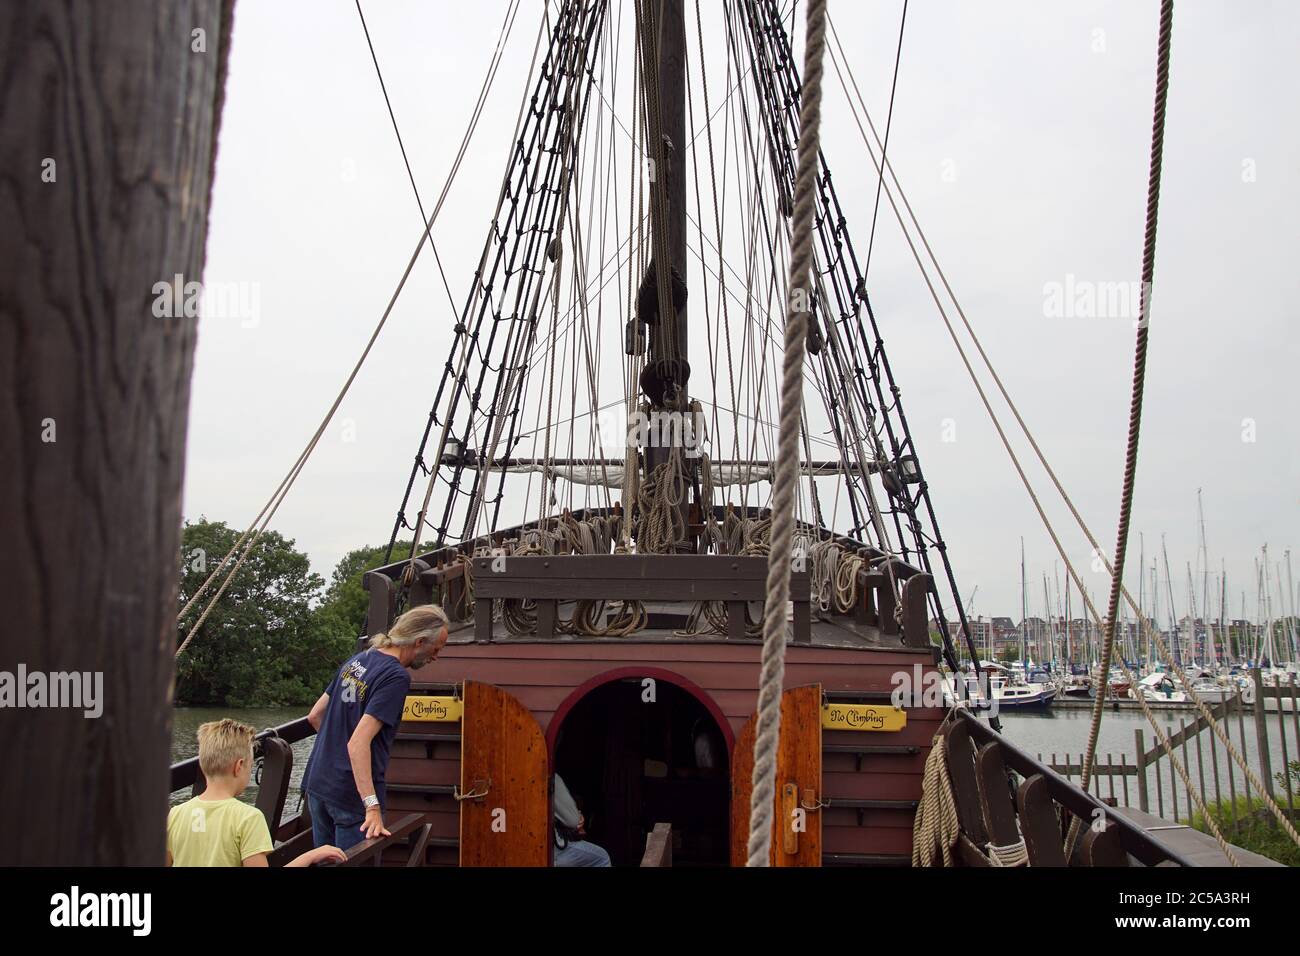 Zweite Nachbildung von Halve Maen. Boot (ähnlich einer Karacke) der niederländischen V.O.C. segelte 1609 nach New York. Kapitän Henry Hudson. Hoorn, Niederlande Stockfoto